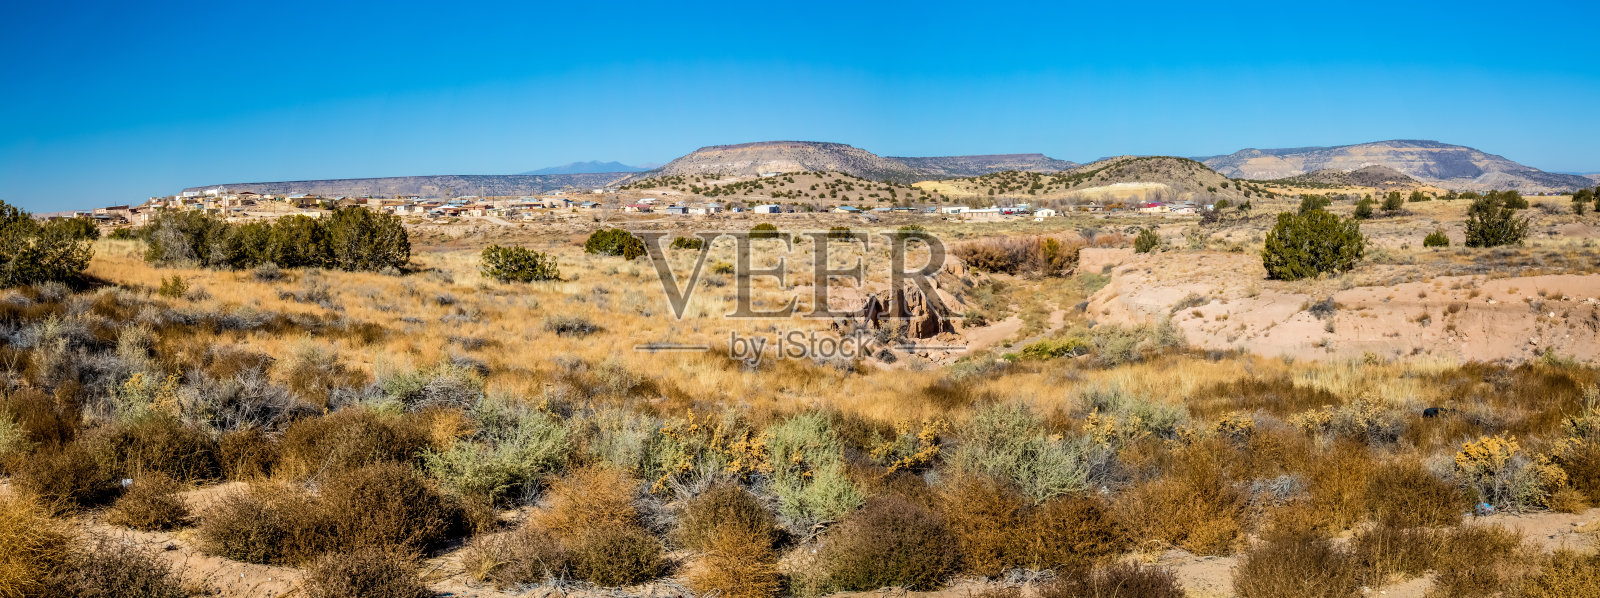 新墨西哥沙漠小村庄的高分辨率全景图照片摄影图片